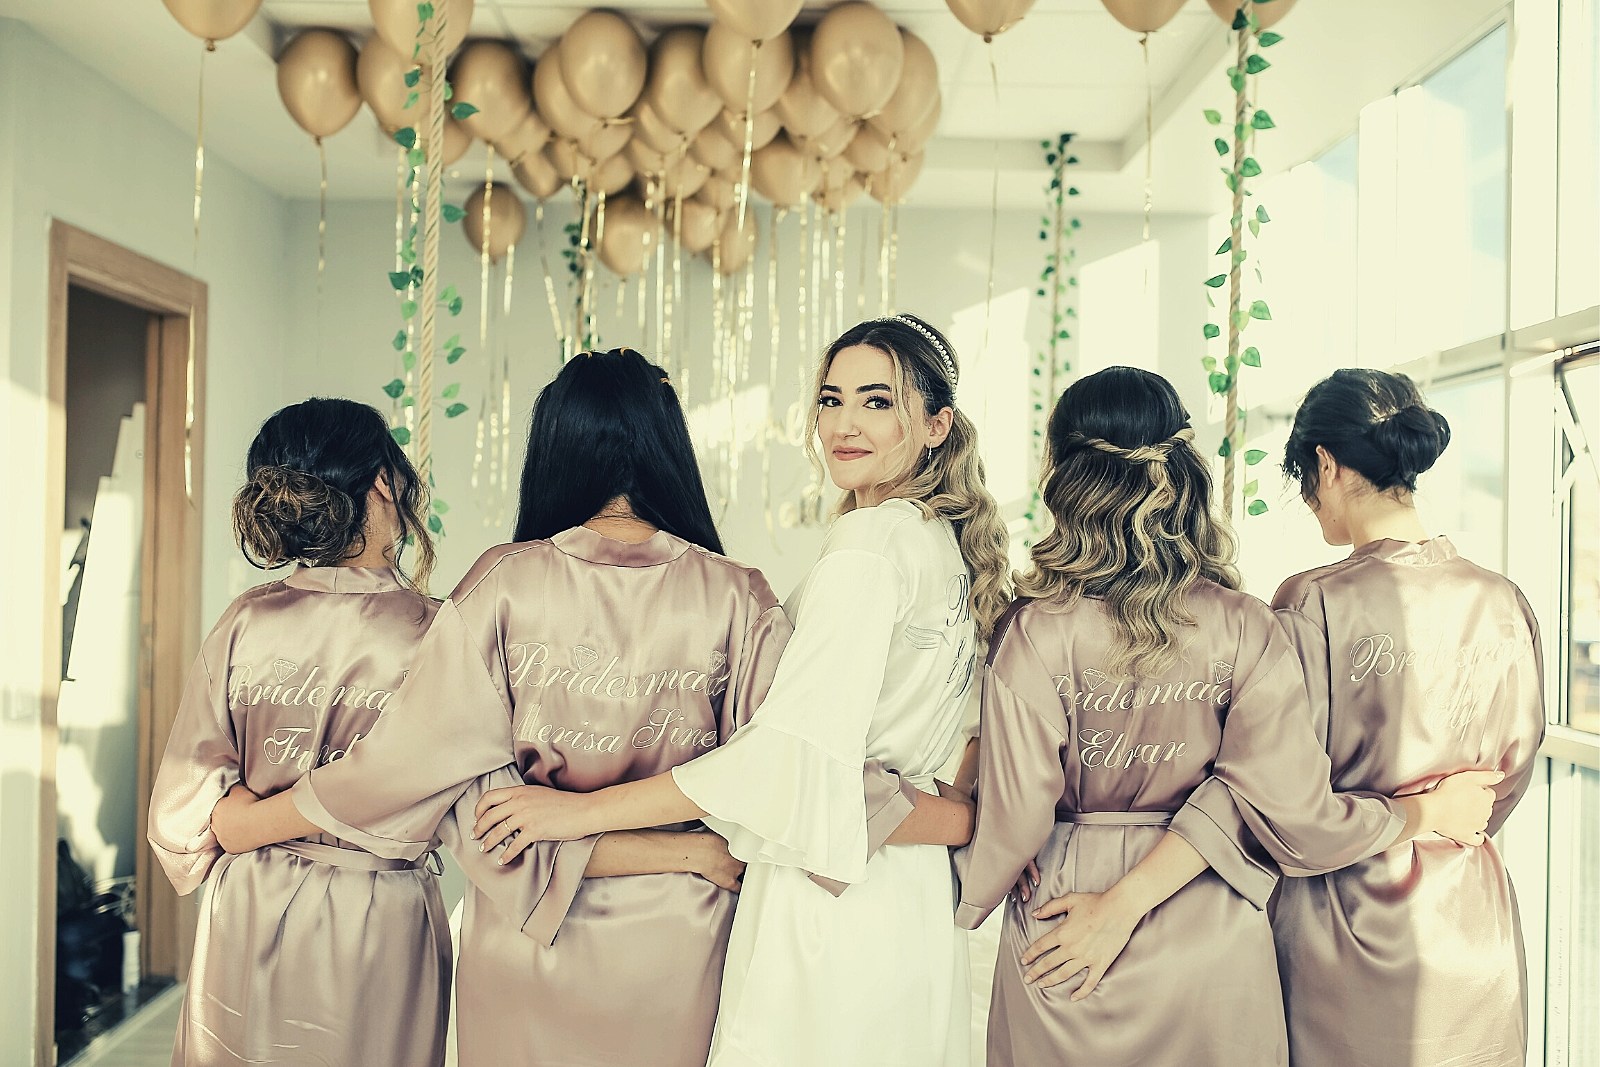 Bridesmaid Robes | Bridesmaid Gifts | Bridal Party Robes | Wedding Robes |  Bride Robe | Bridesmaid Robe | Bridal Party Robe | Robes Set